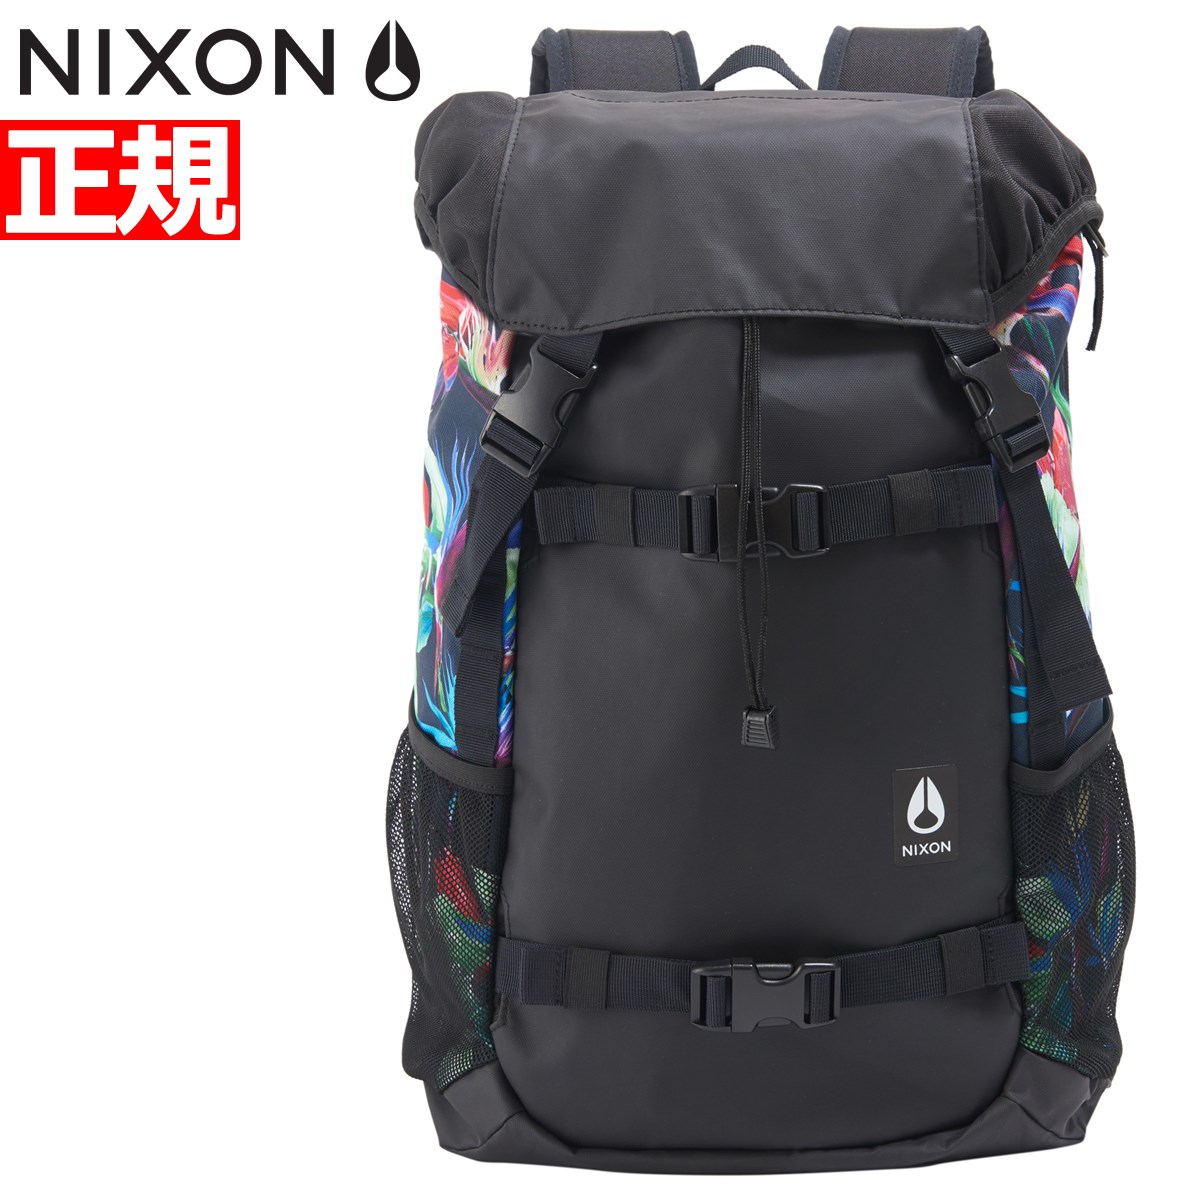 ニクソン Iii ランドロック3 Nixon リュック バックパック ランドロック3 Landlock Backpack Iii Backpack Black Paradice 日本限定モデル Nc 00 18 新作 Neelセレクトショップ 正規品 送料無料 あす楽対応